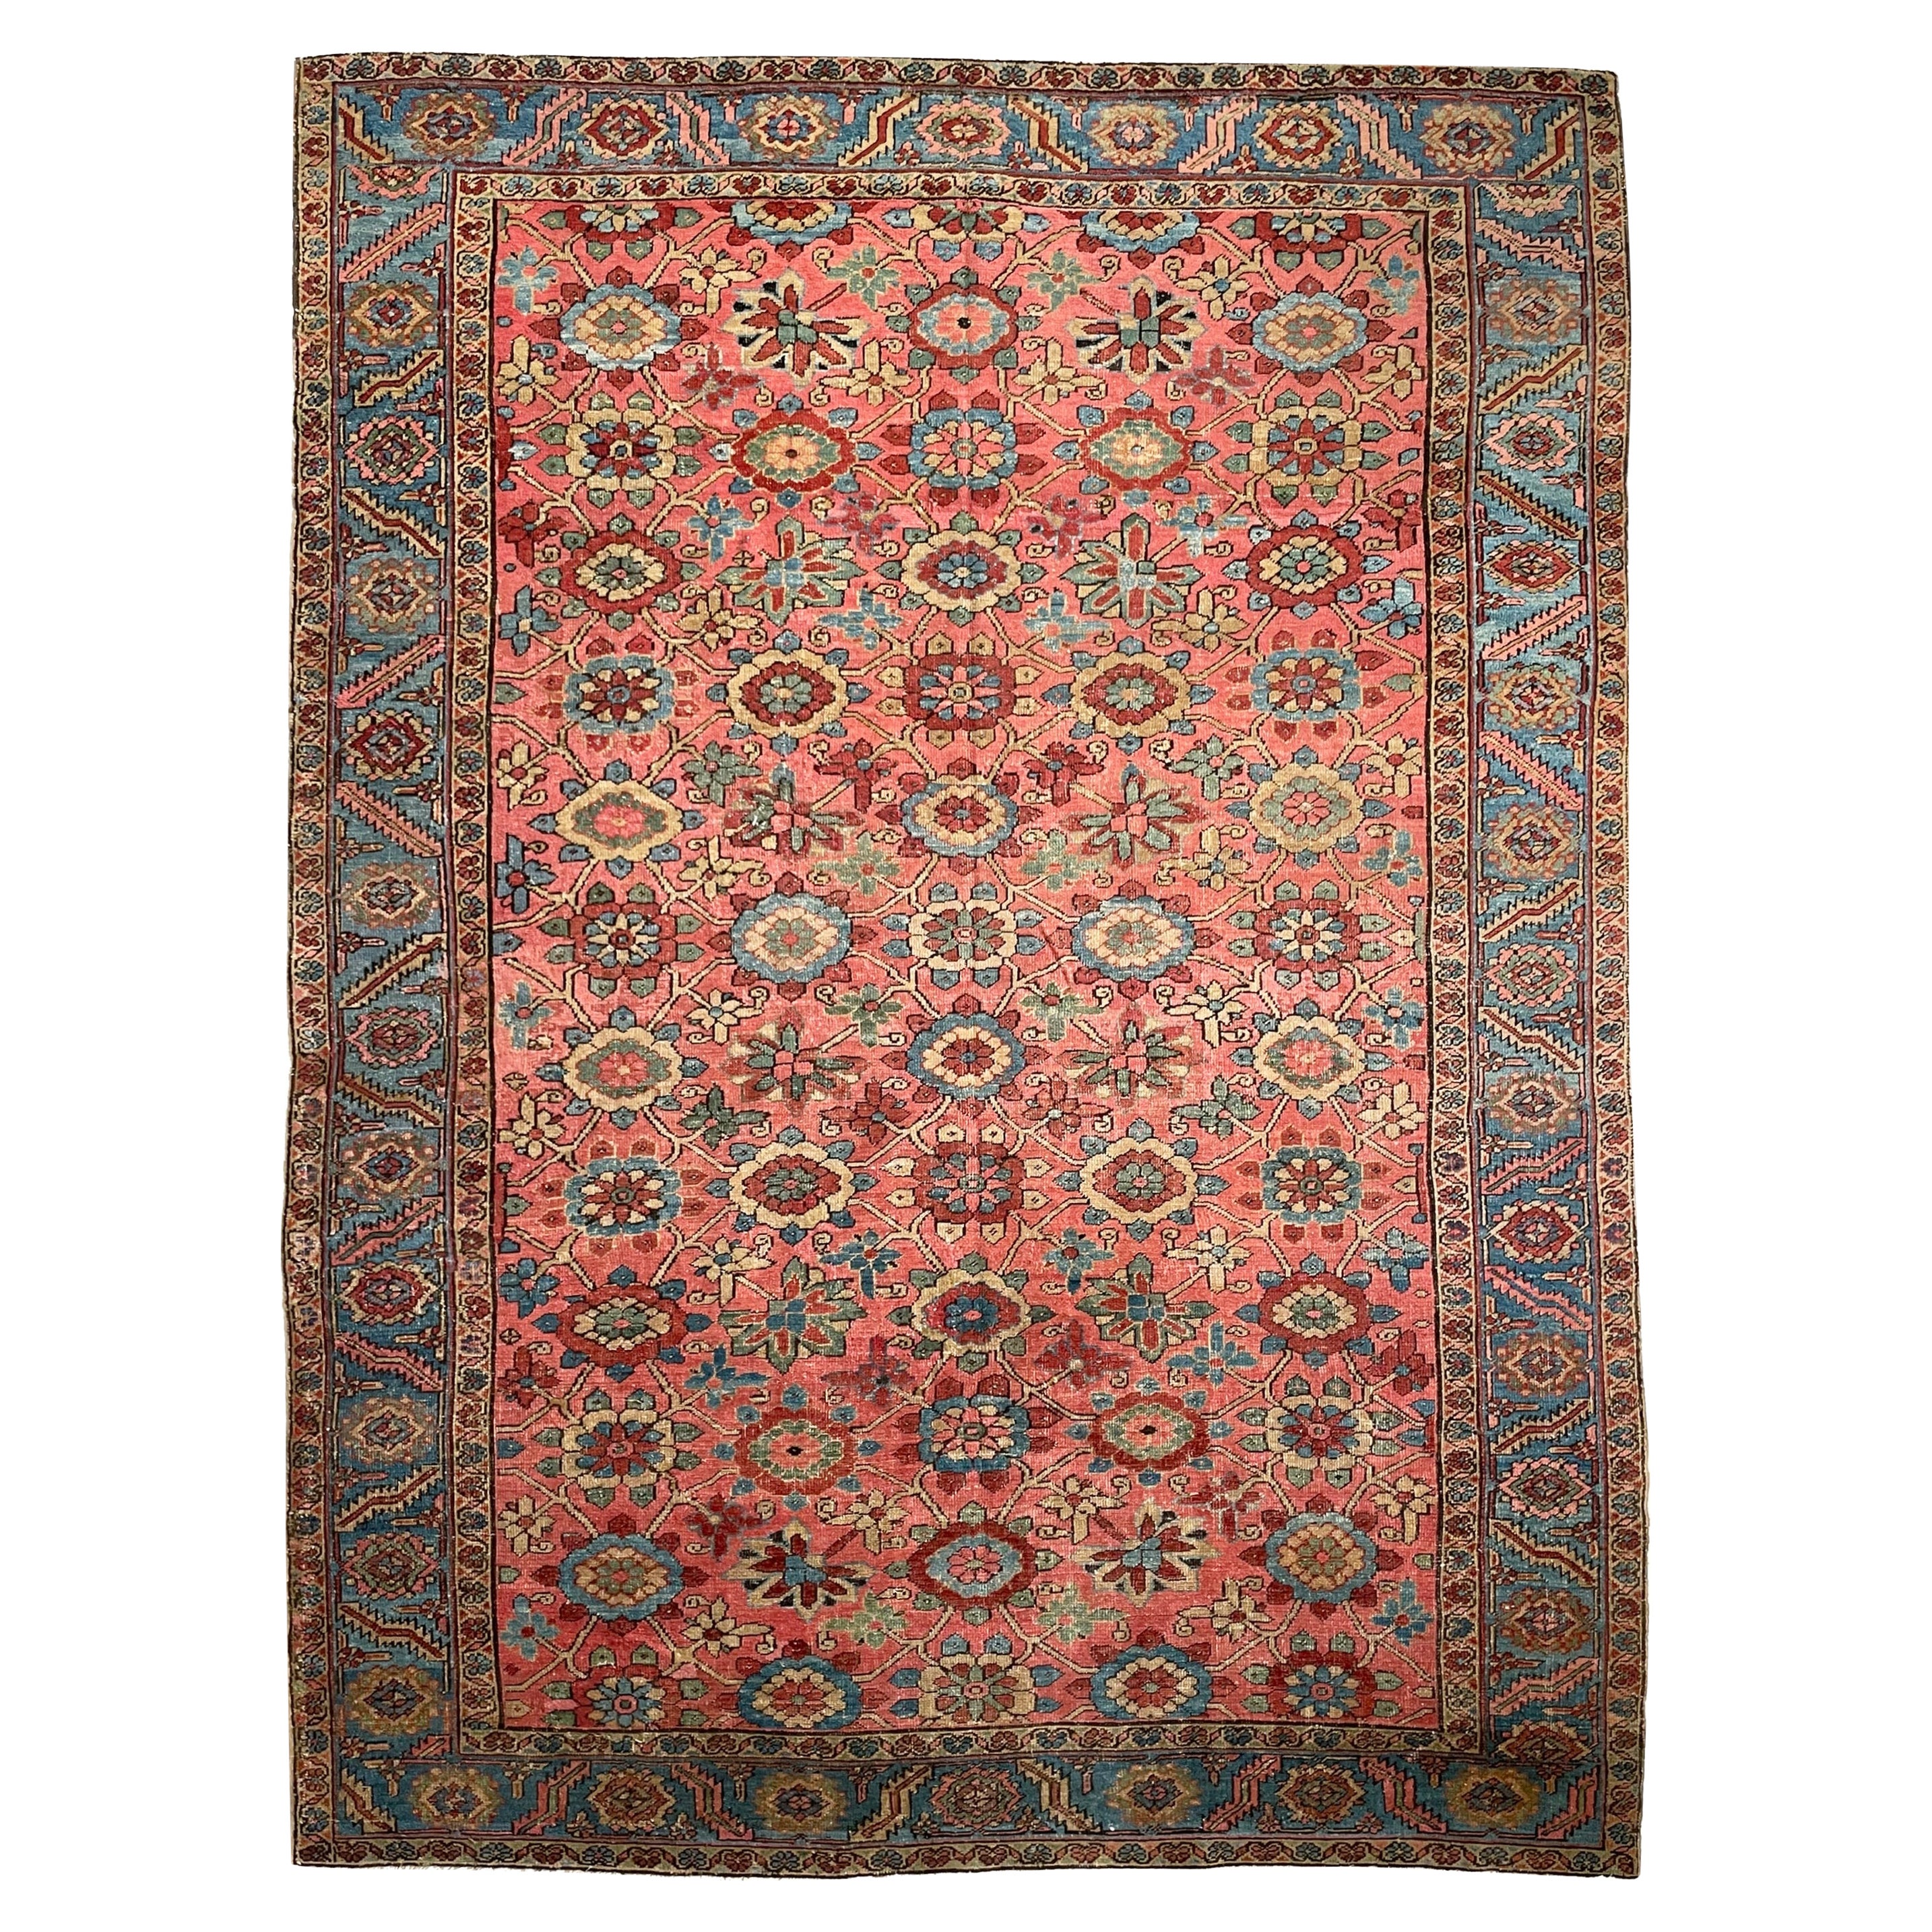 Magnífica alfombra persa antigua Heriz con un raro diseño Mina-Khani, alrededor de 1920